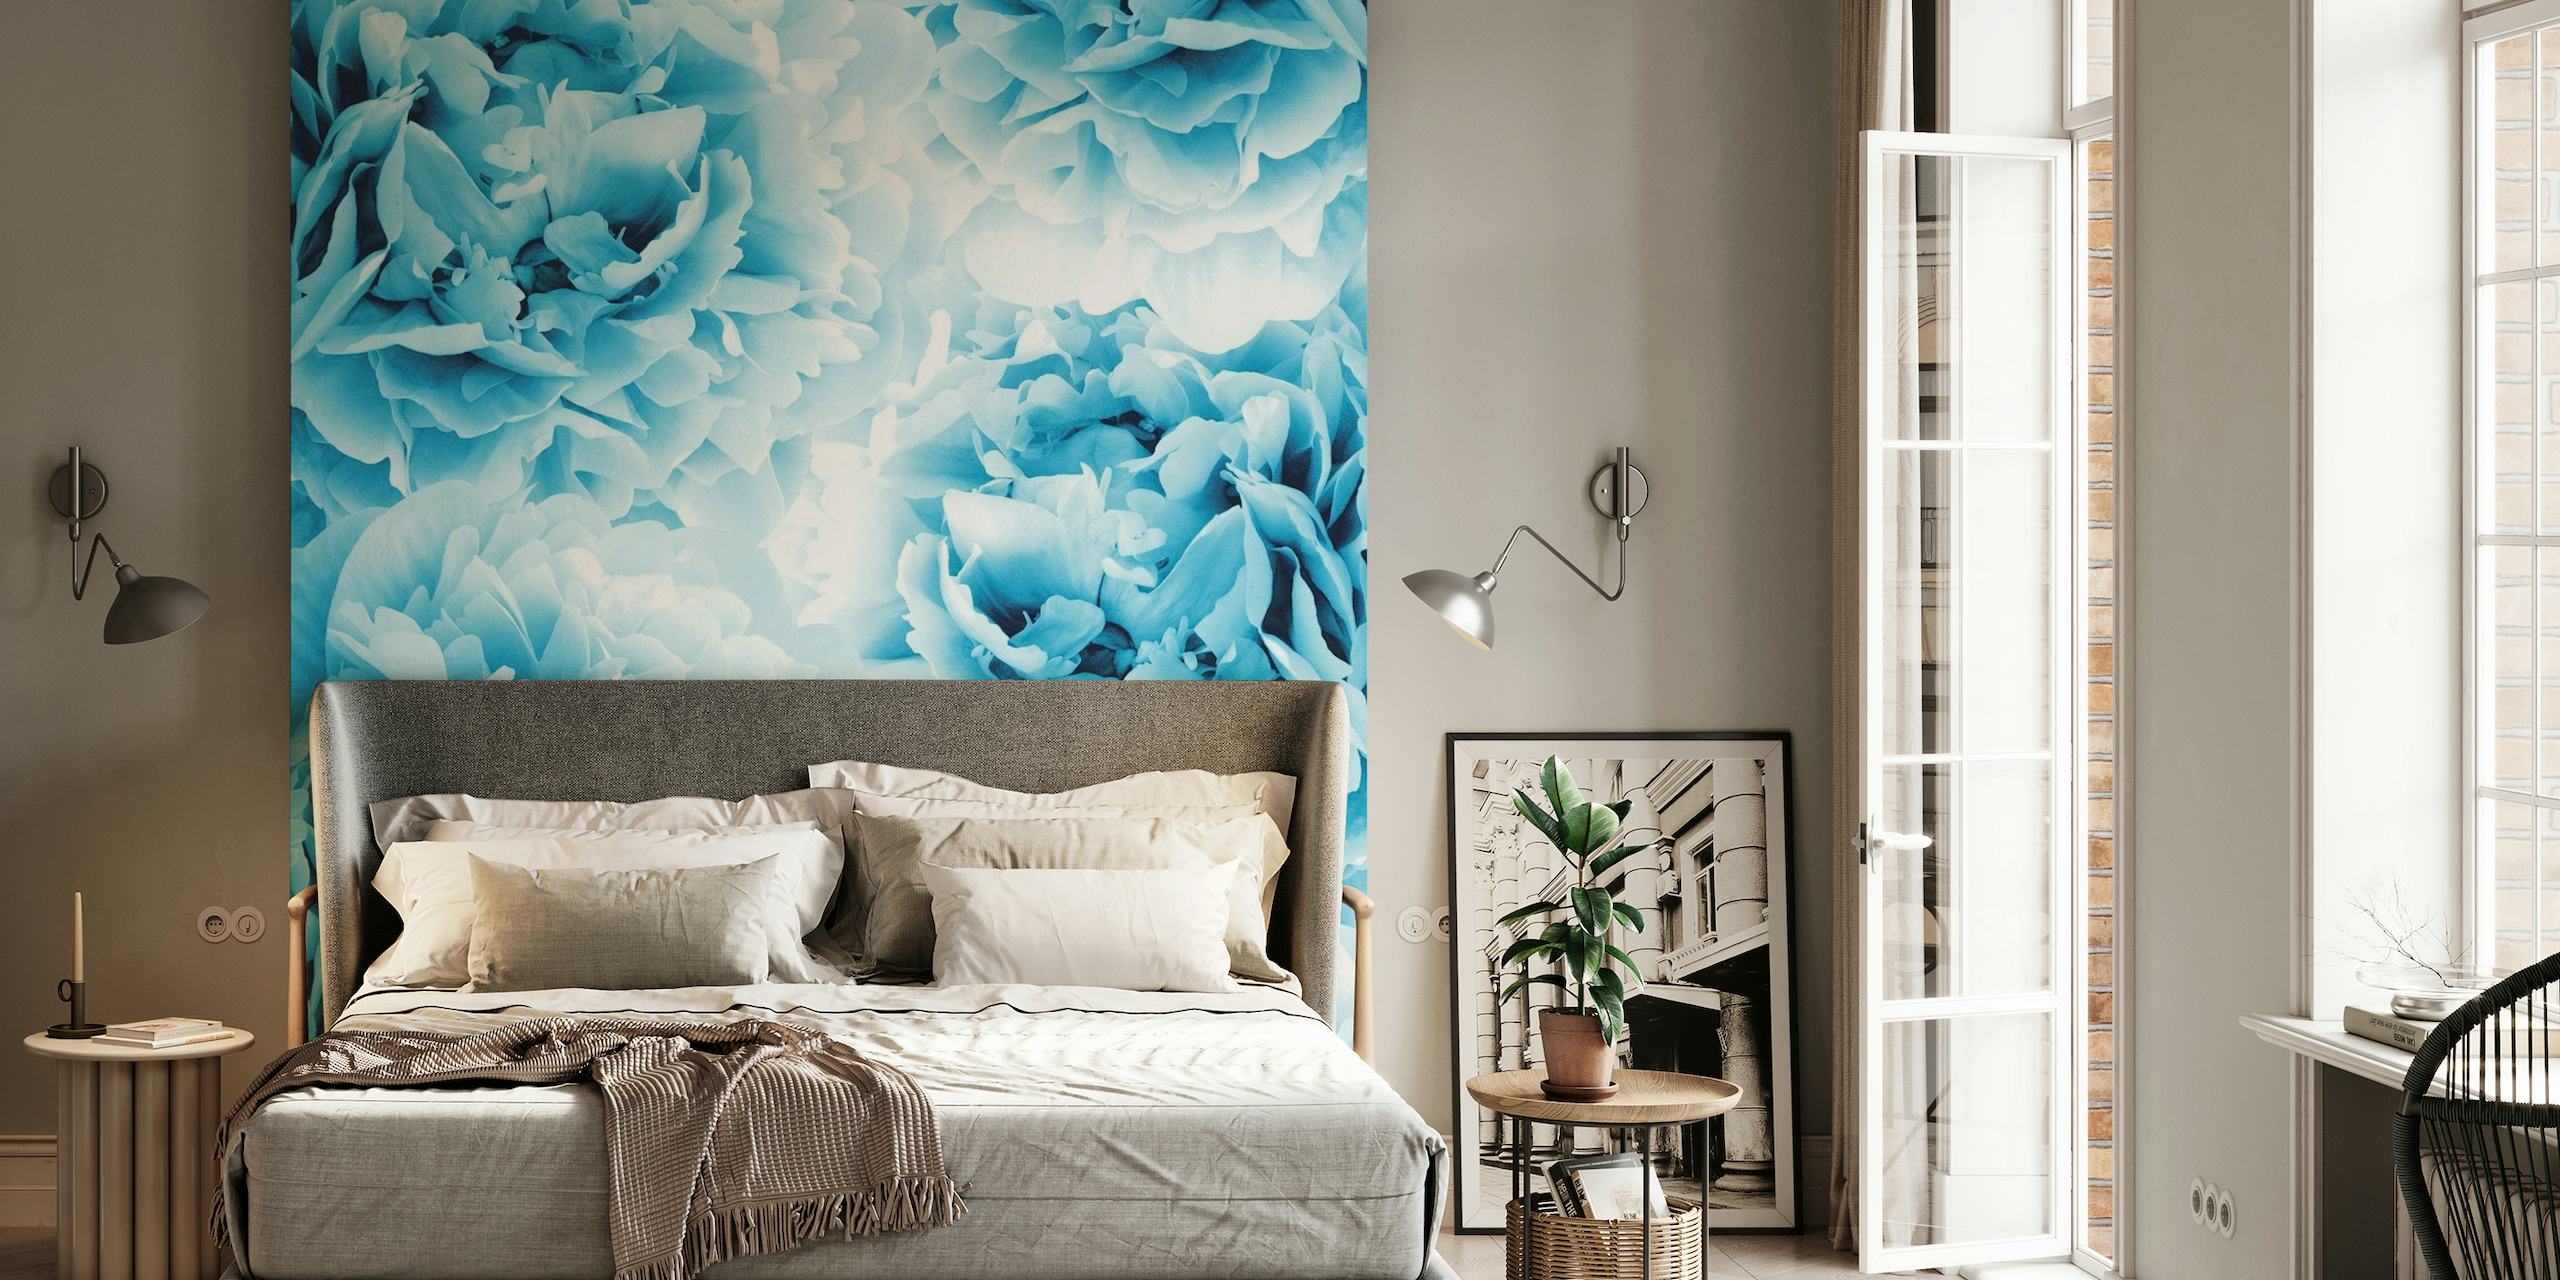 Elegante blauwe pioenrozen muurschildering voor een serene sfeer in de kamer